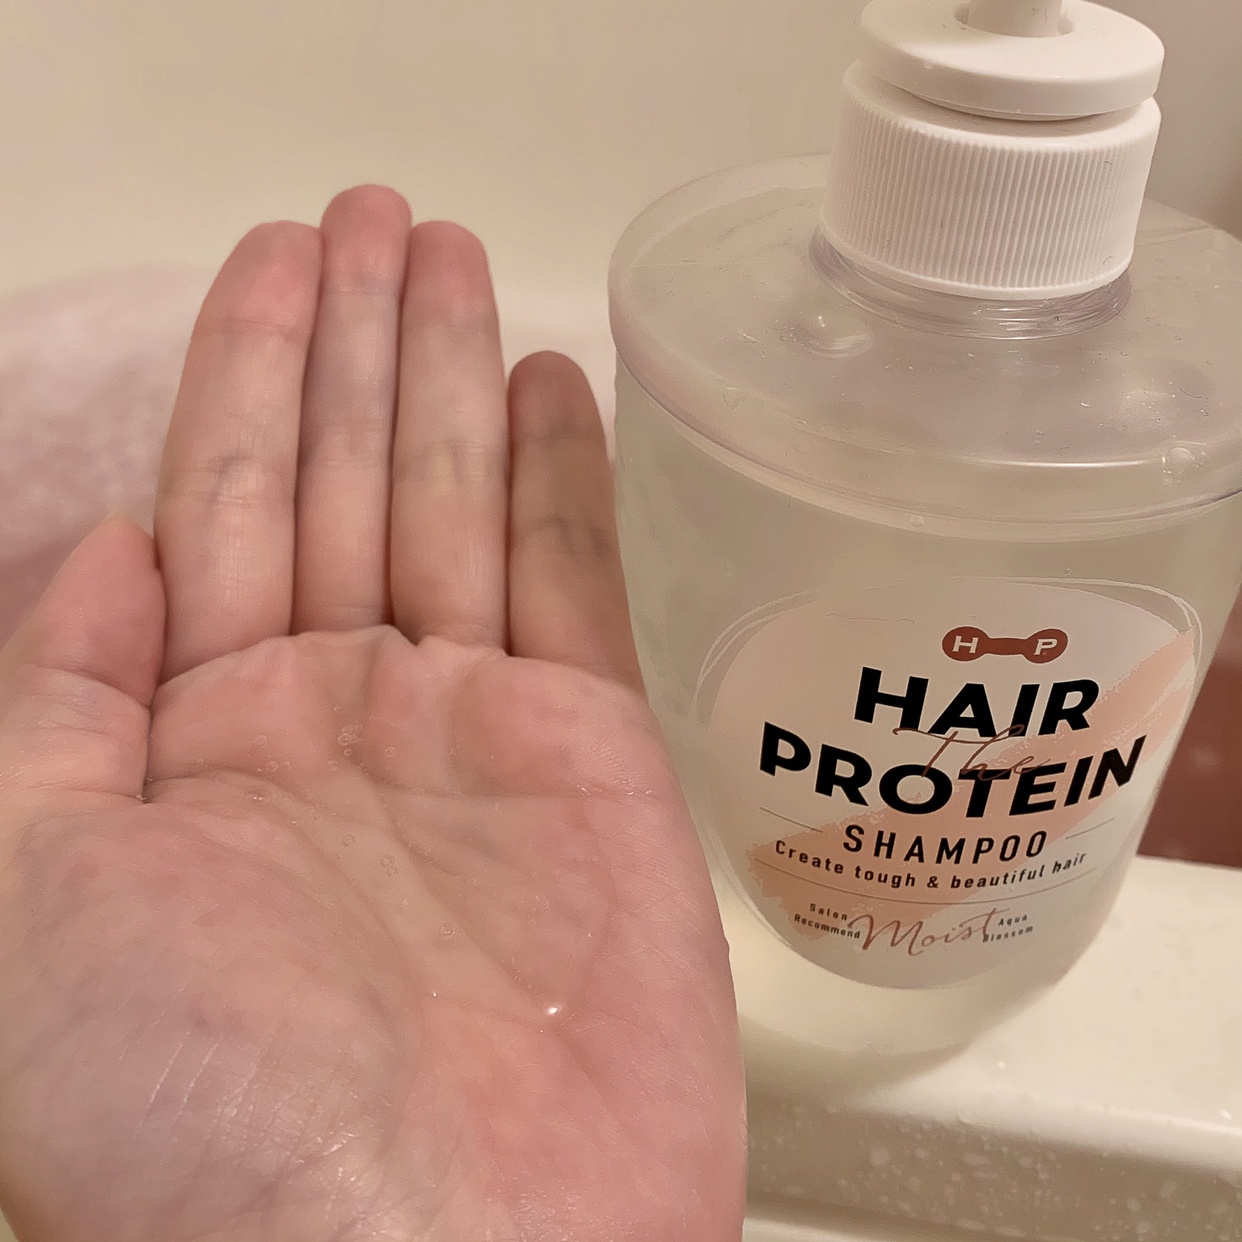 Hair The Protein(ヘアザプロテイン) モイスト シャンプーを使ったうりむー姉さんさんのクチコミ画像4